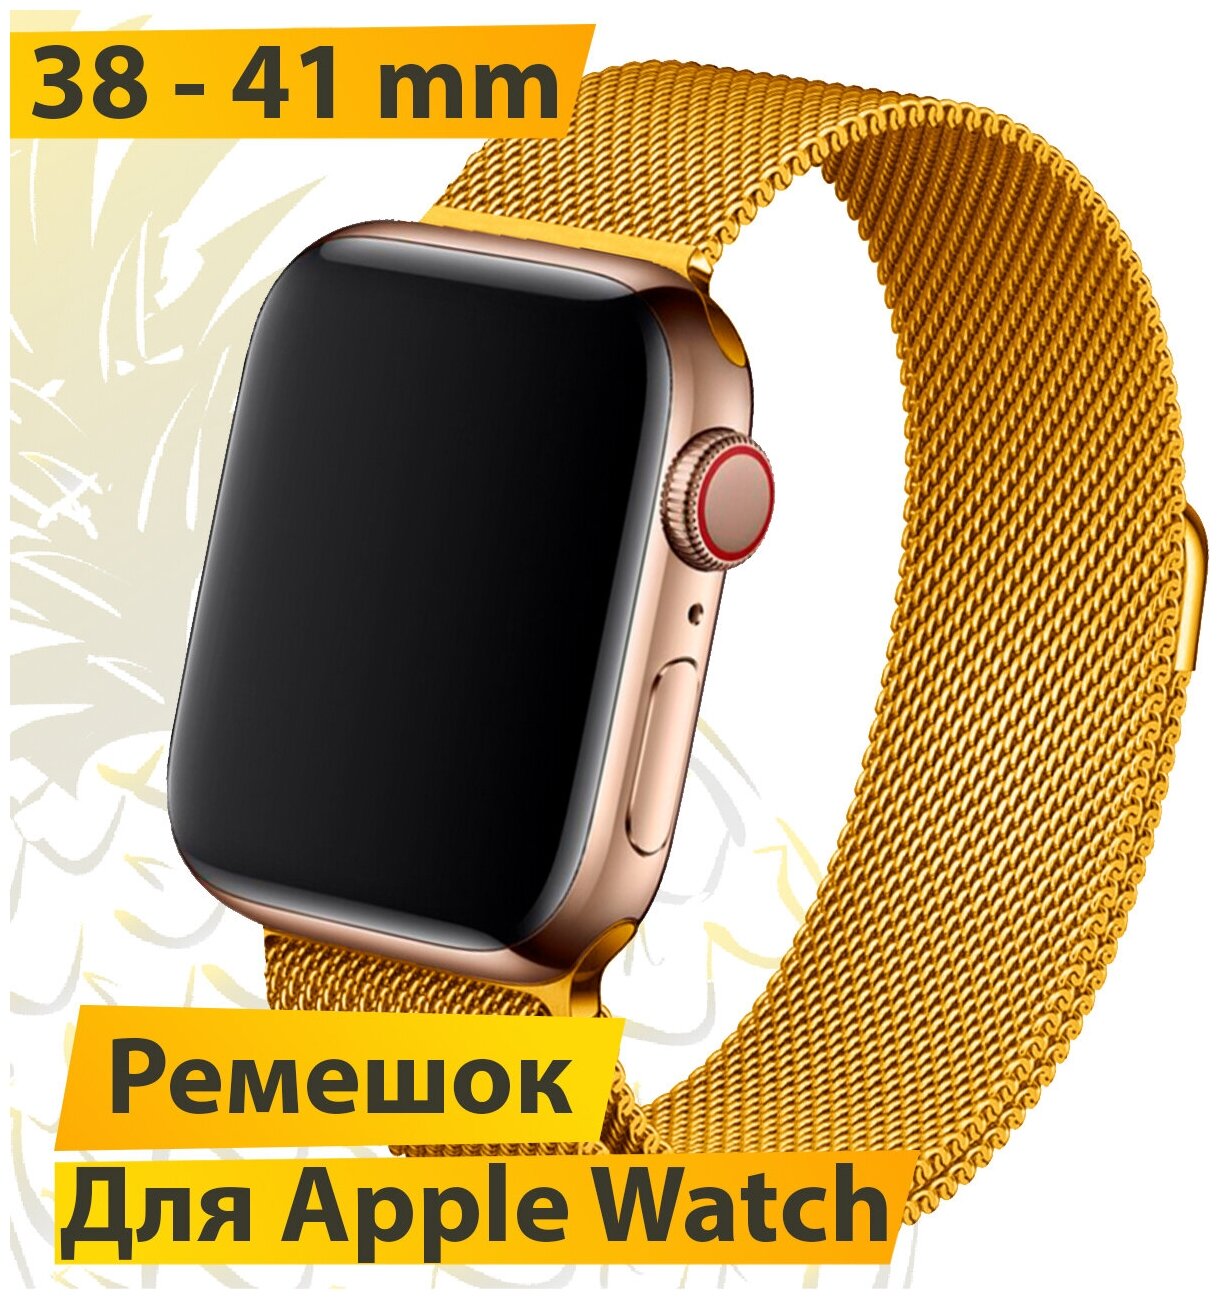 Ремешок для Apple Watch 38-41 mm Миланская петля / Металлический браслет для Эпл Вотч (Лимонное золото)